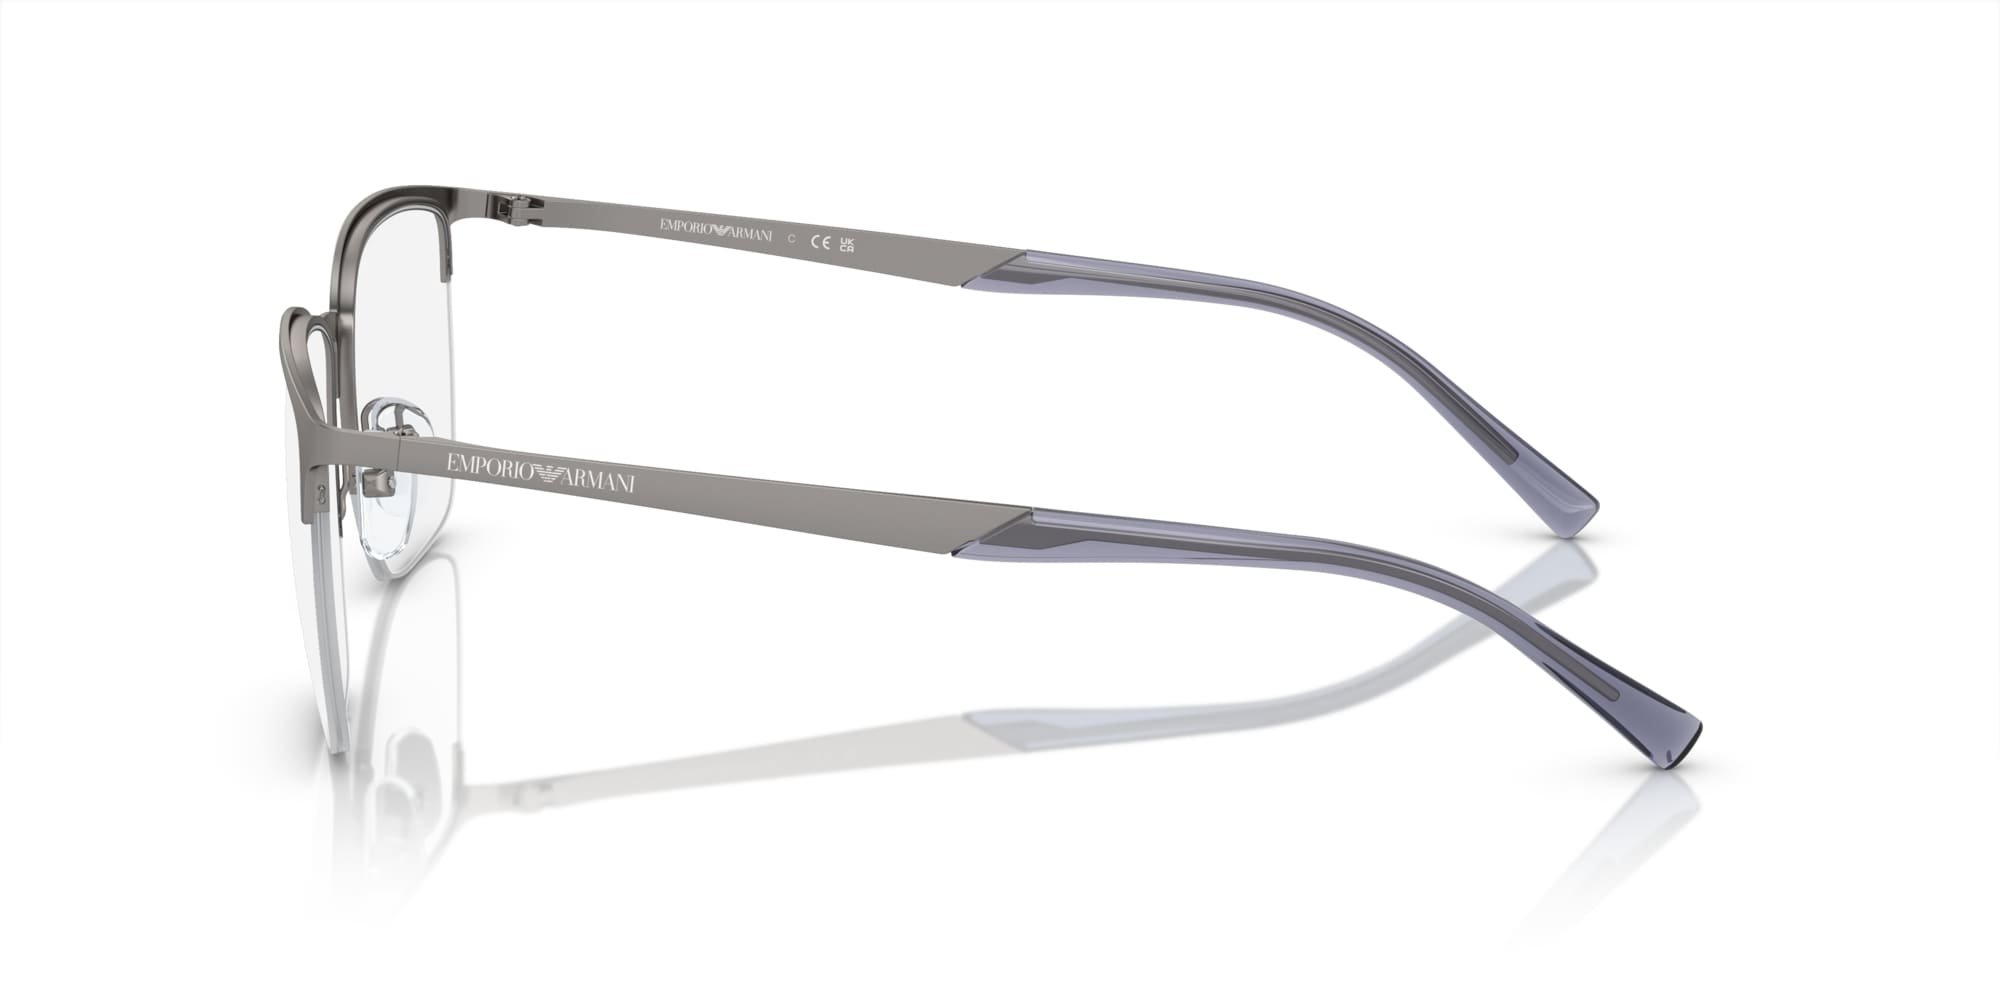 Das Bild zeigt die Korrektionsbrille EA1151 3003 von der Marke Emporio Armani in Silber.